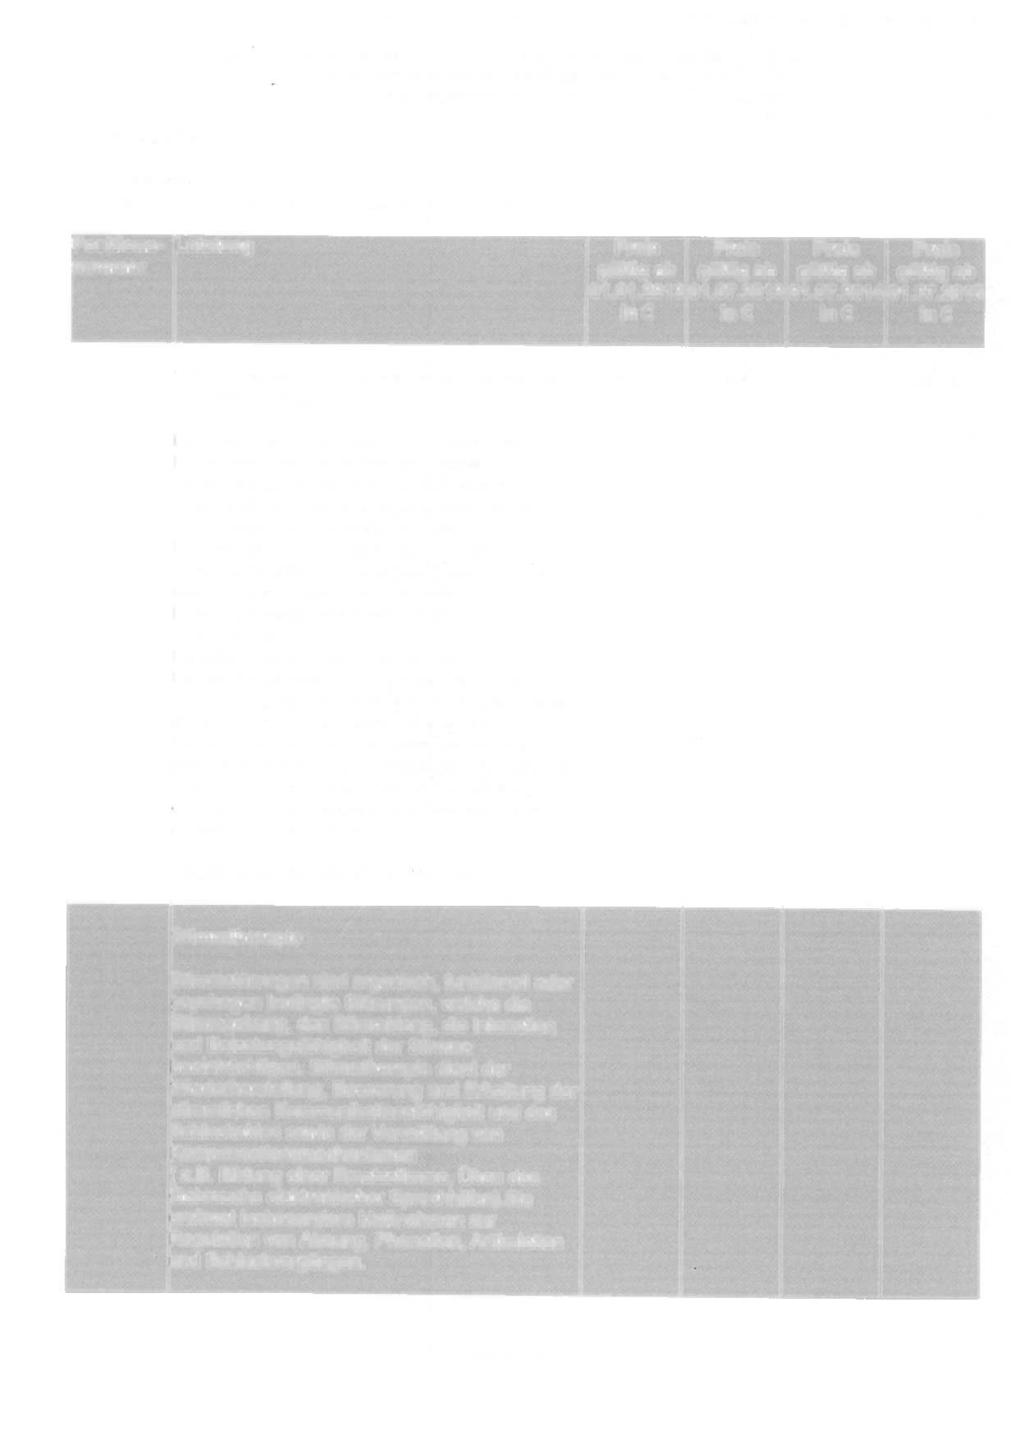 Anlagen zum Vertrag gemaß 125 SGB V über sprachtherapeutischen Leistungen Vergütungsvereinbarung ab die Versorgung mit stimm-, vom 01.01 01.09.2004.